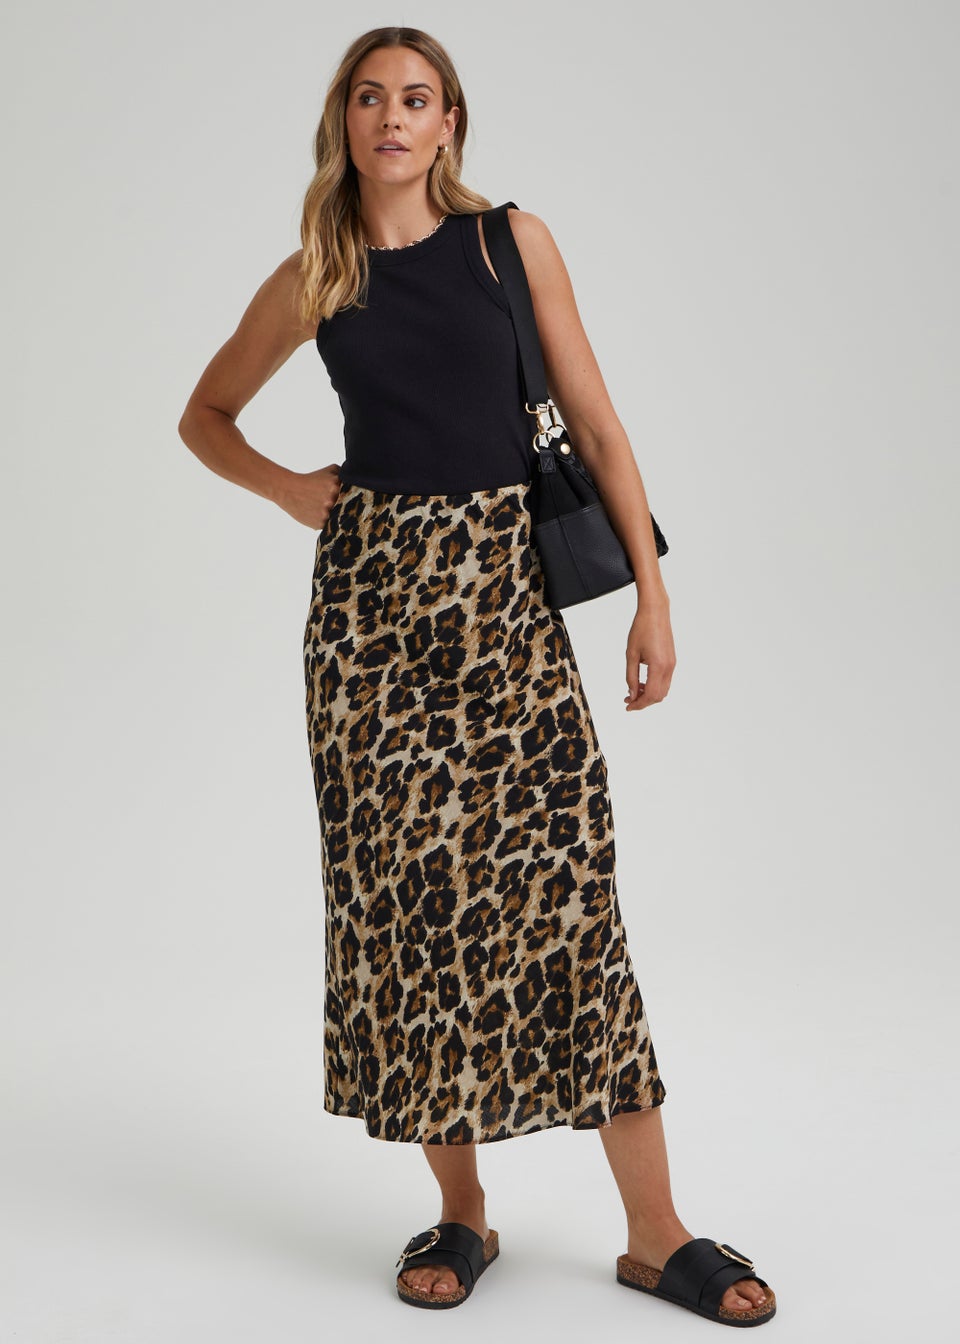 Animal Print Skirt | Target Australia-iangel.vn